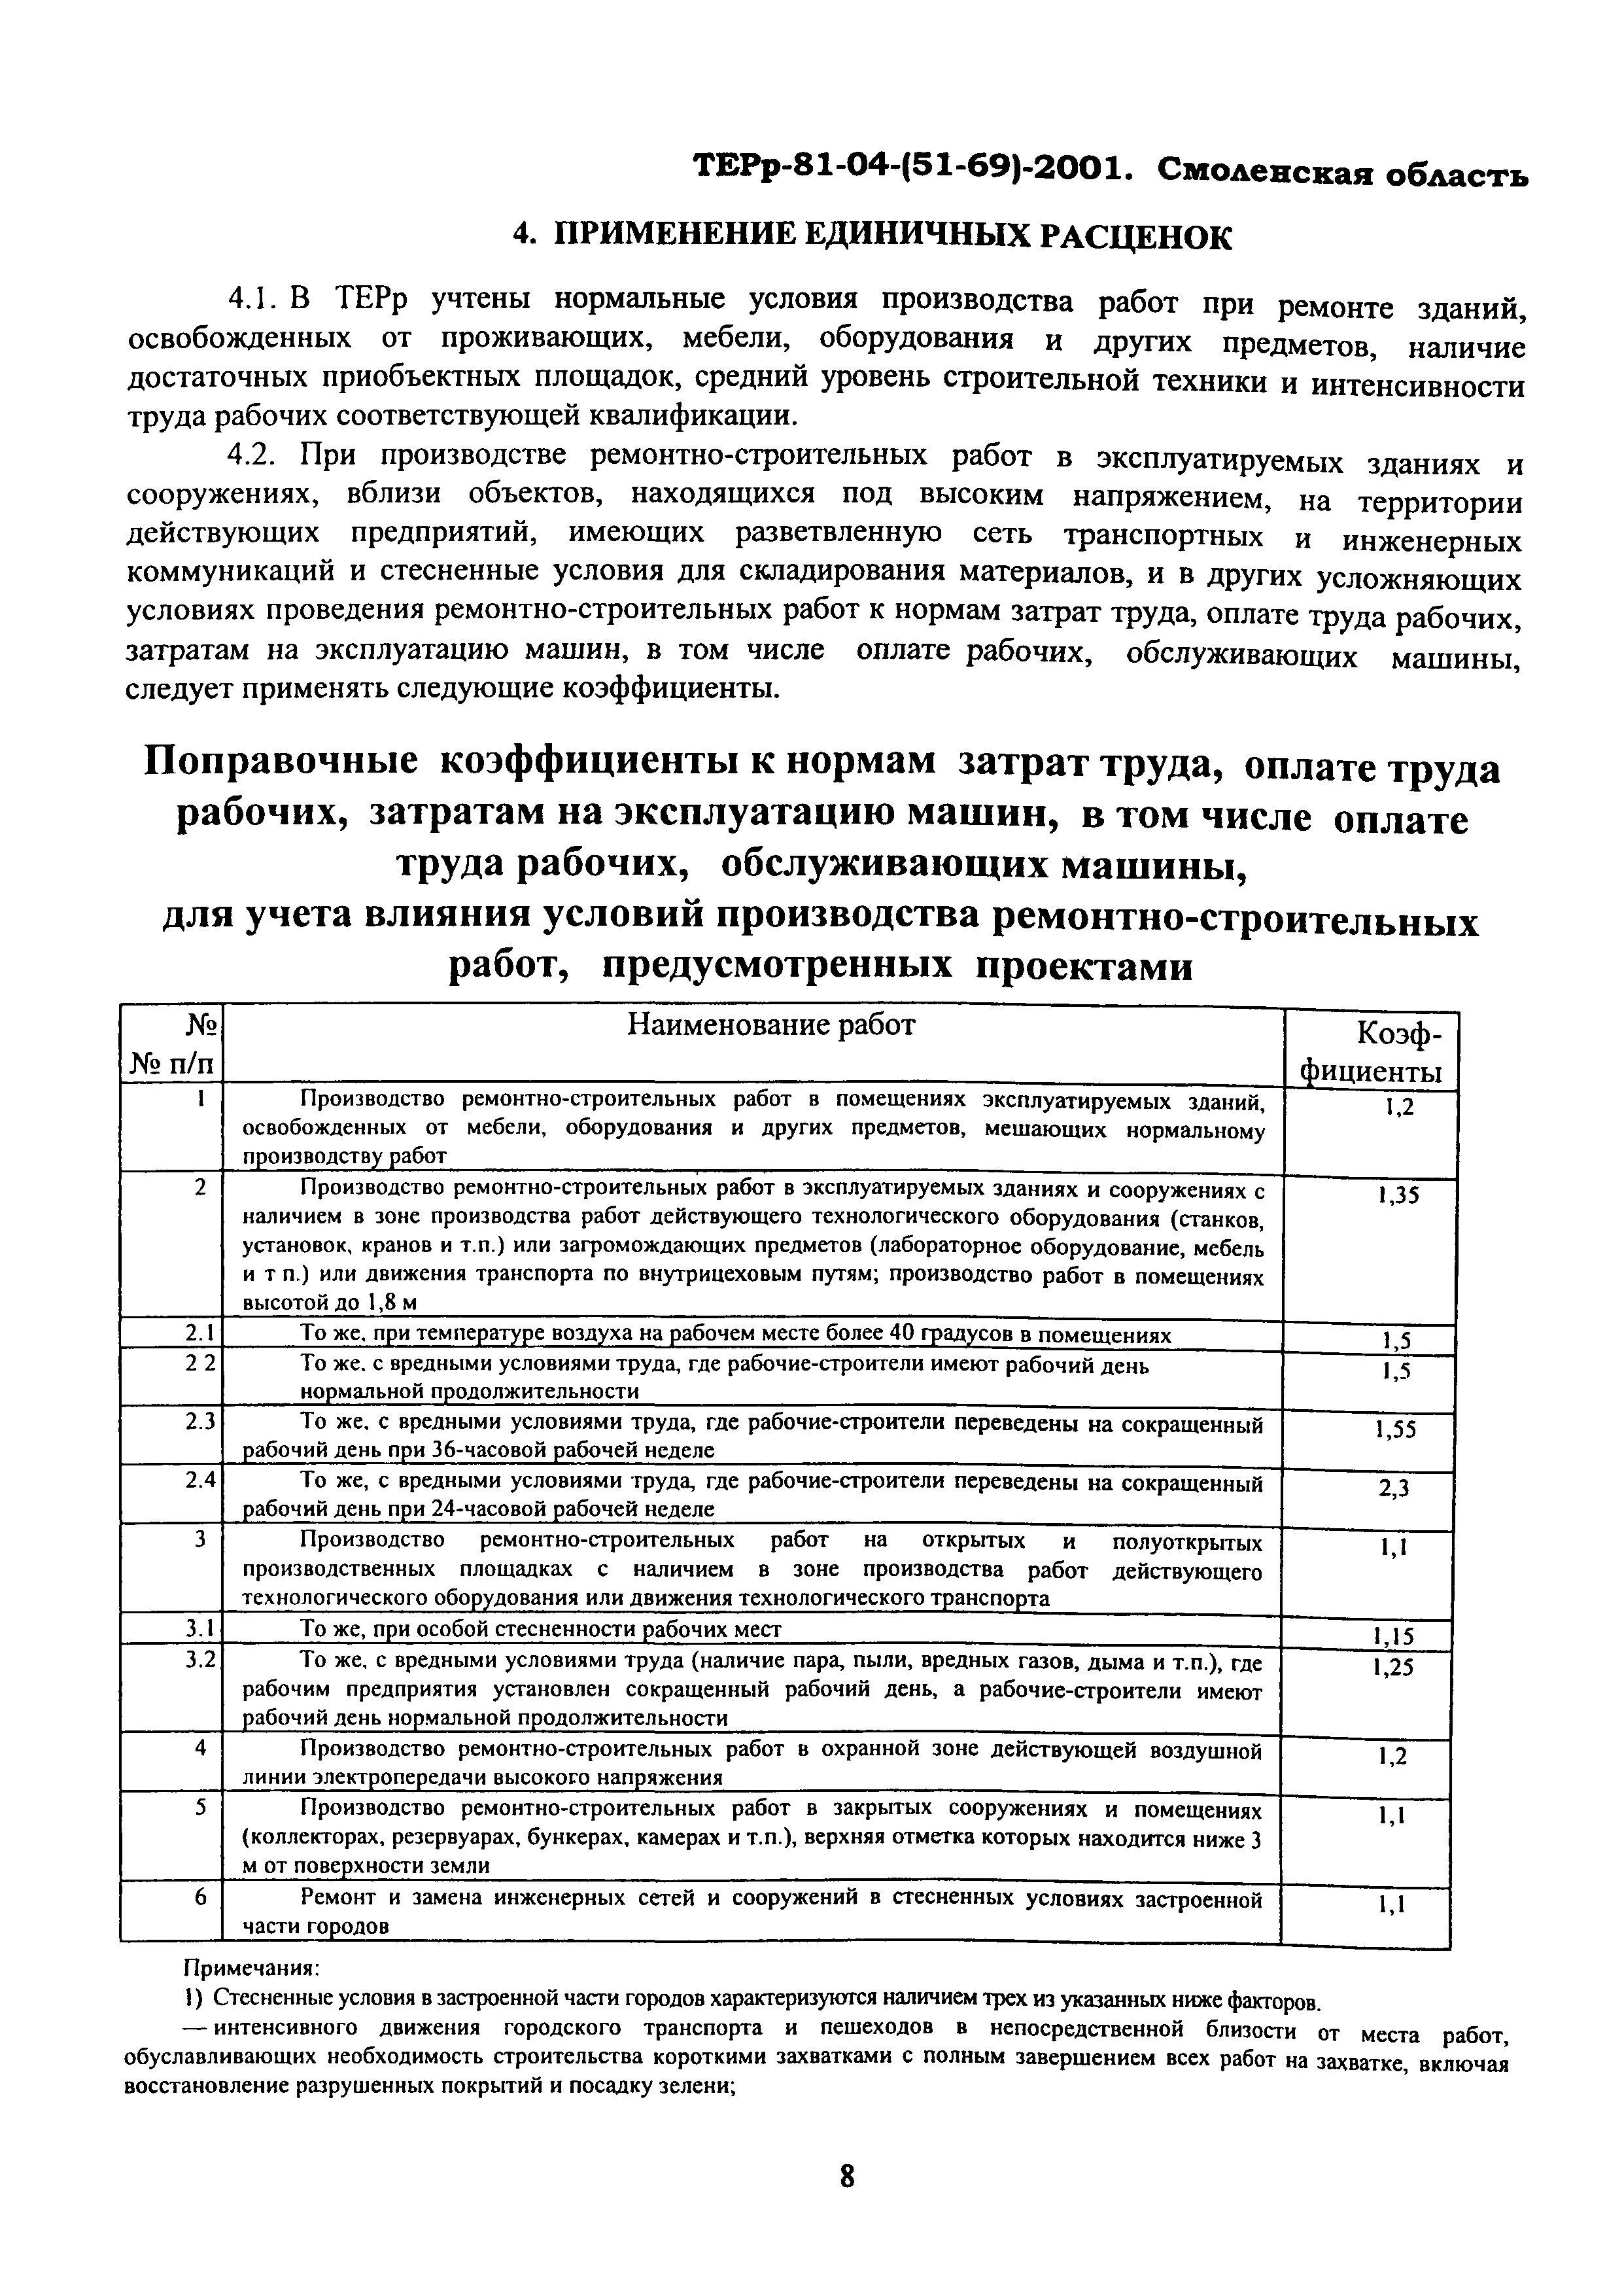 ТЕРр Смоленской области 2001